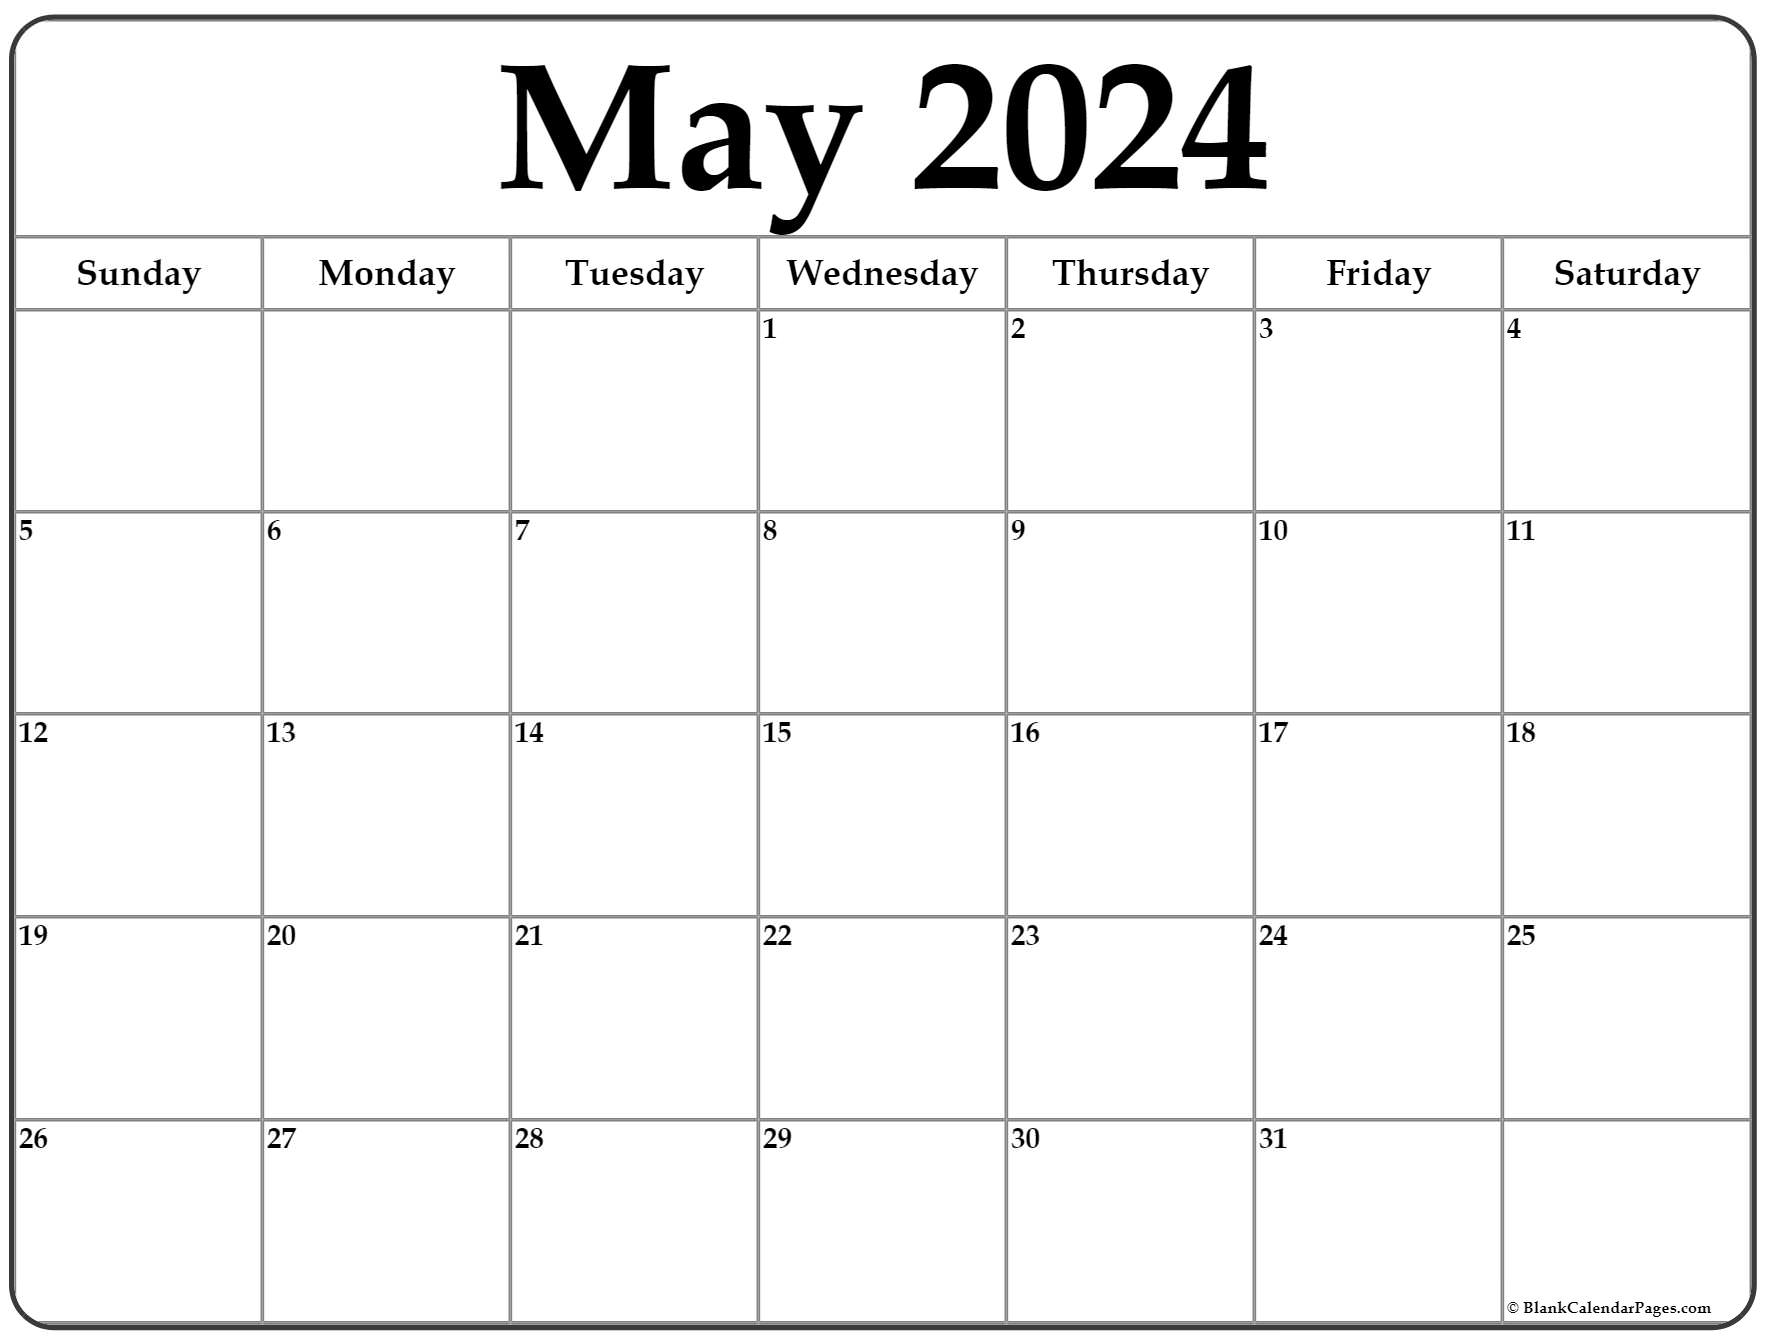 May 2022 Printable Calendar With Holidays May 2022 Calendar | Free Printable Calendar Templates